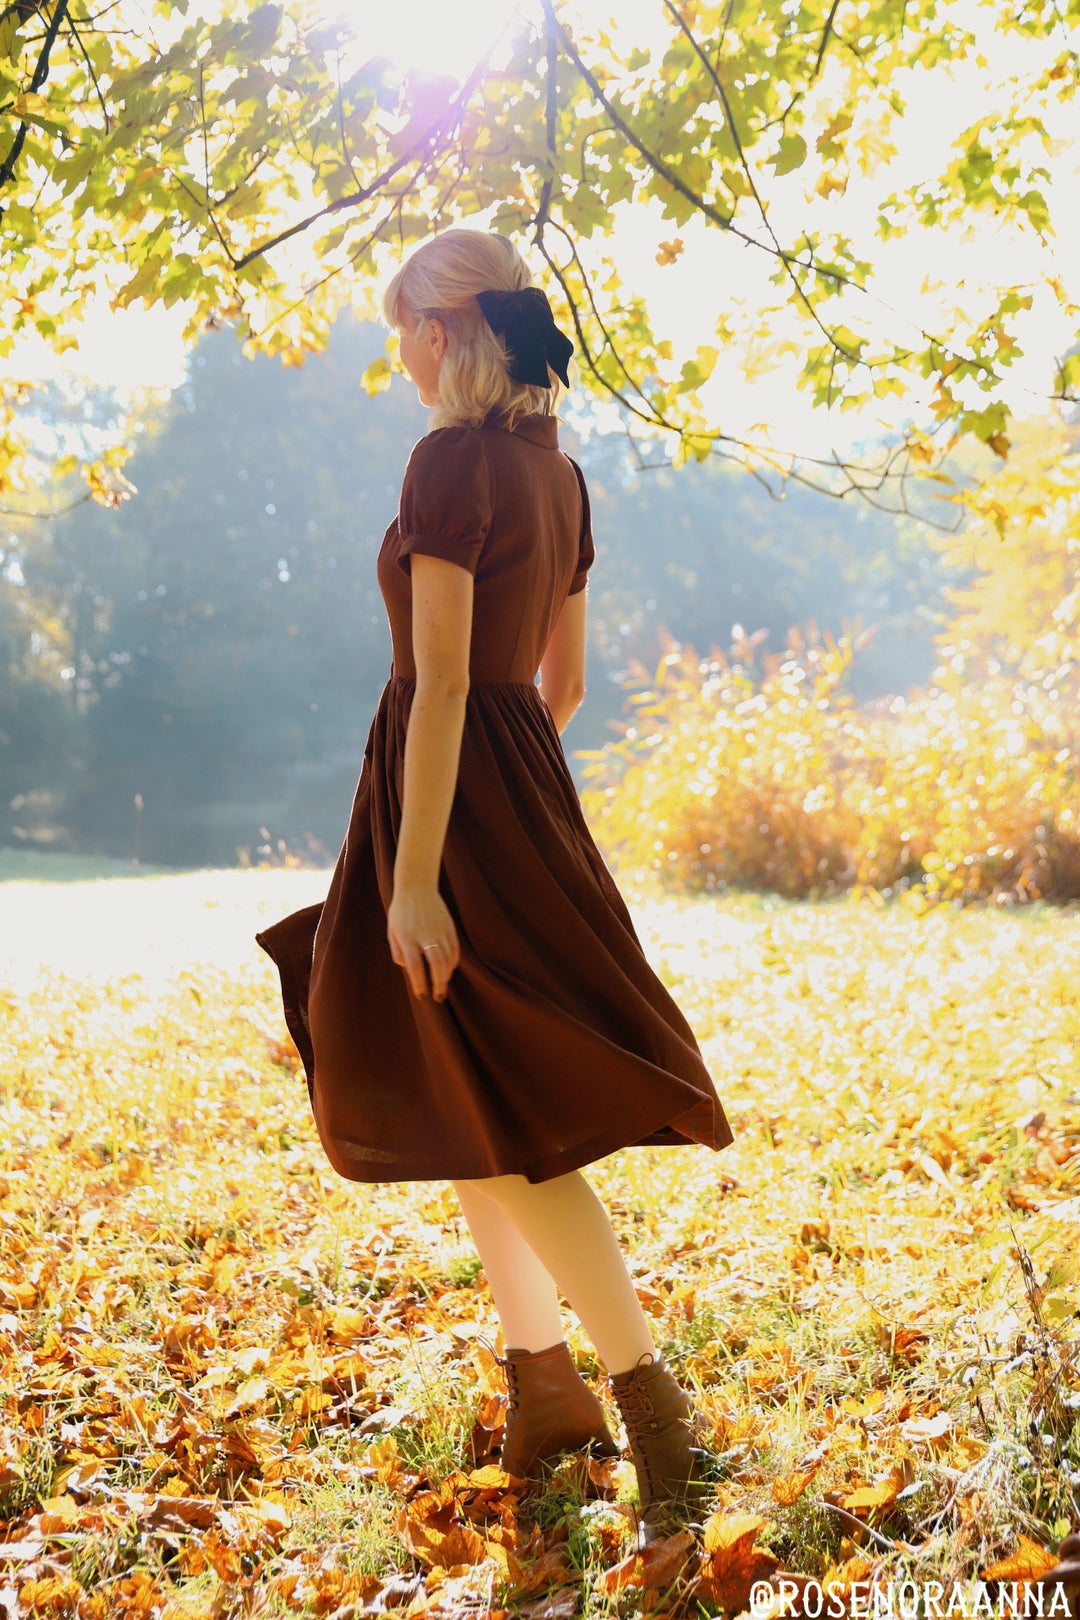 MTO - Amelie Dress in Walnut Linen